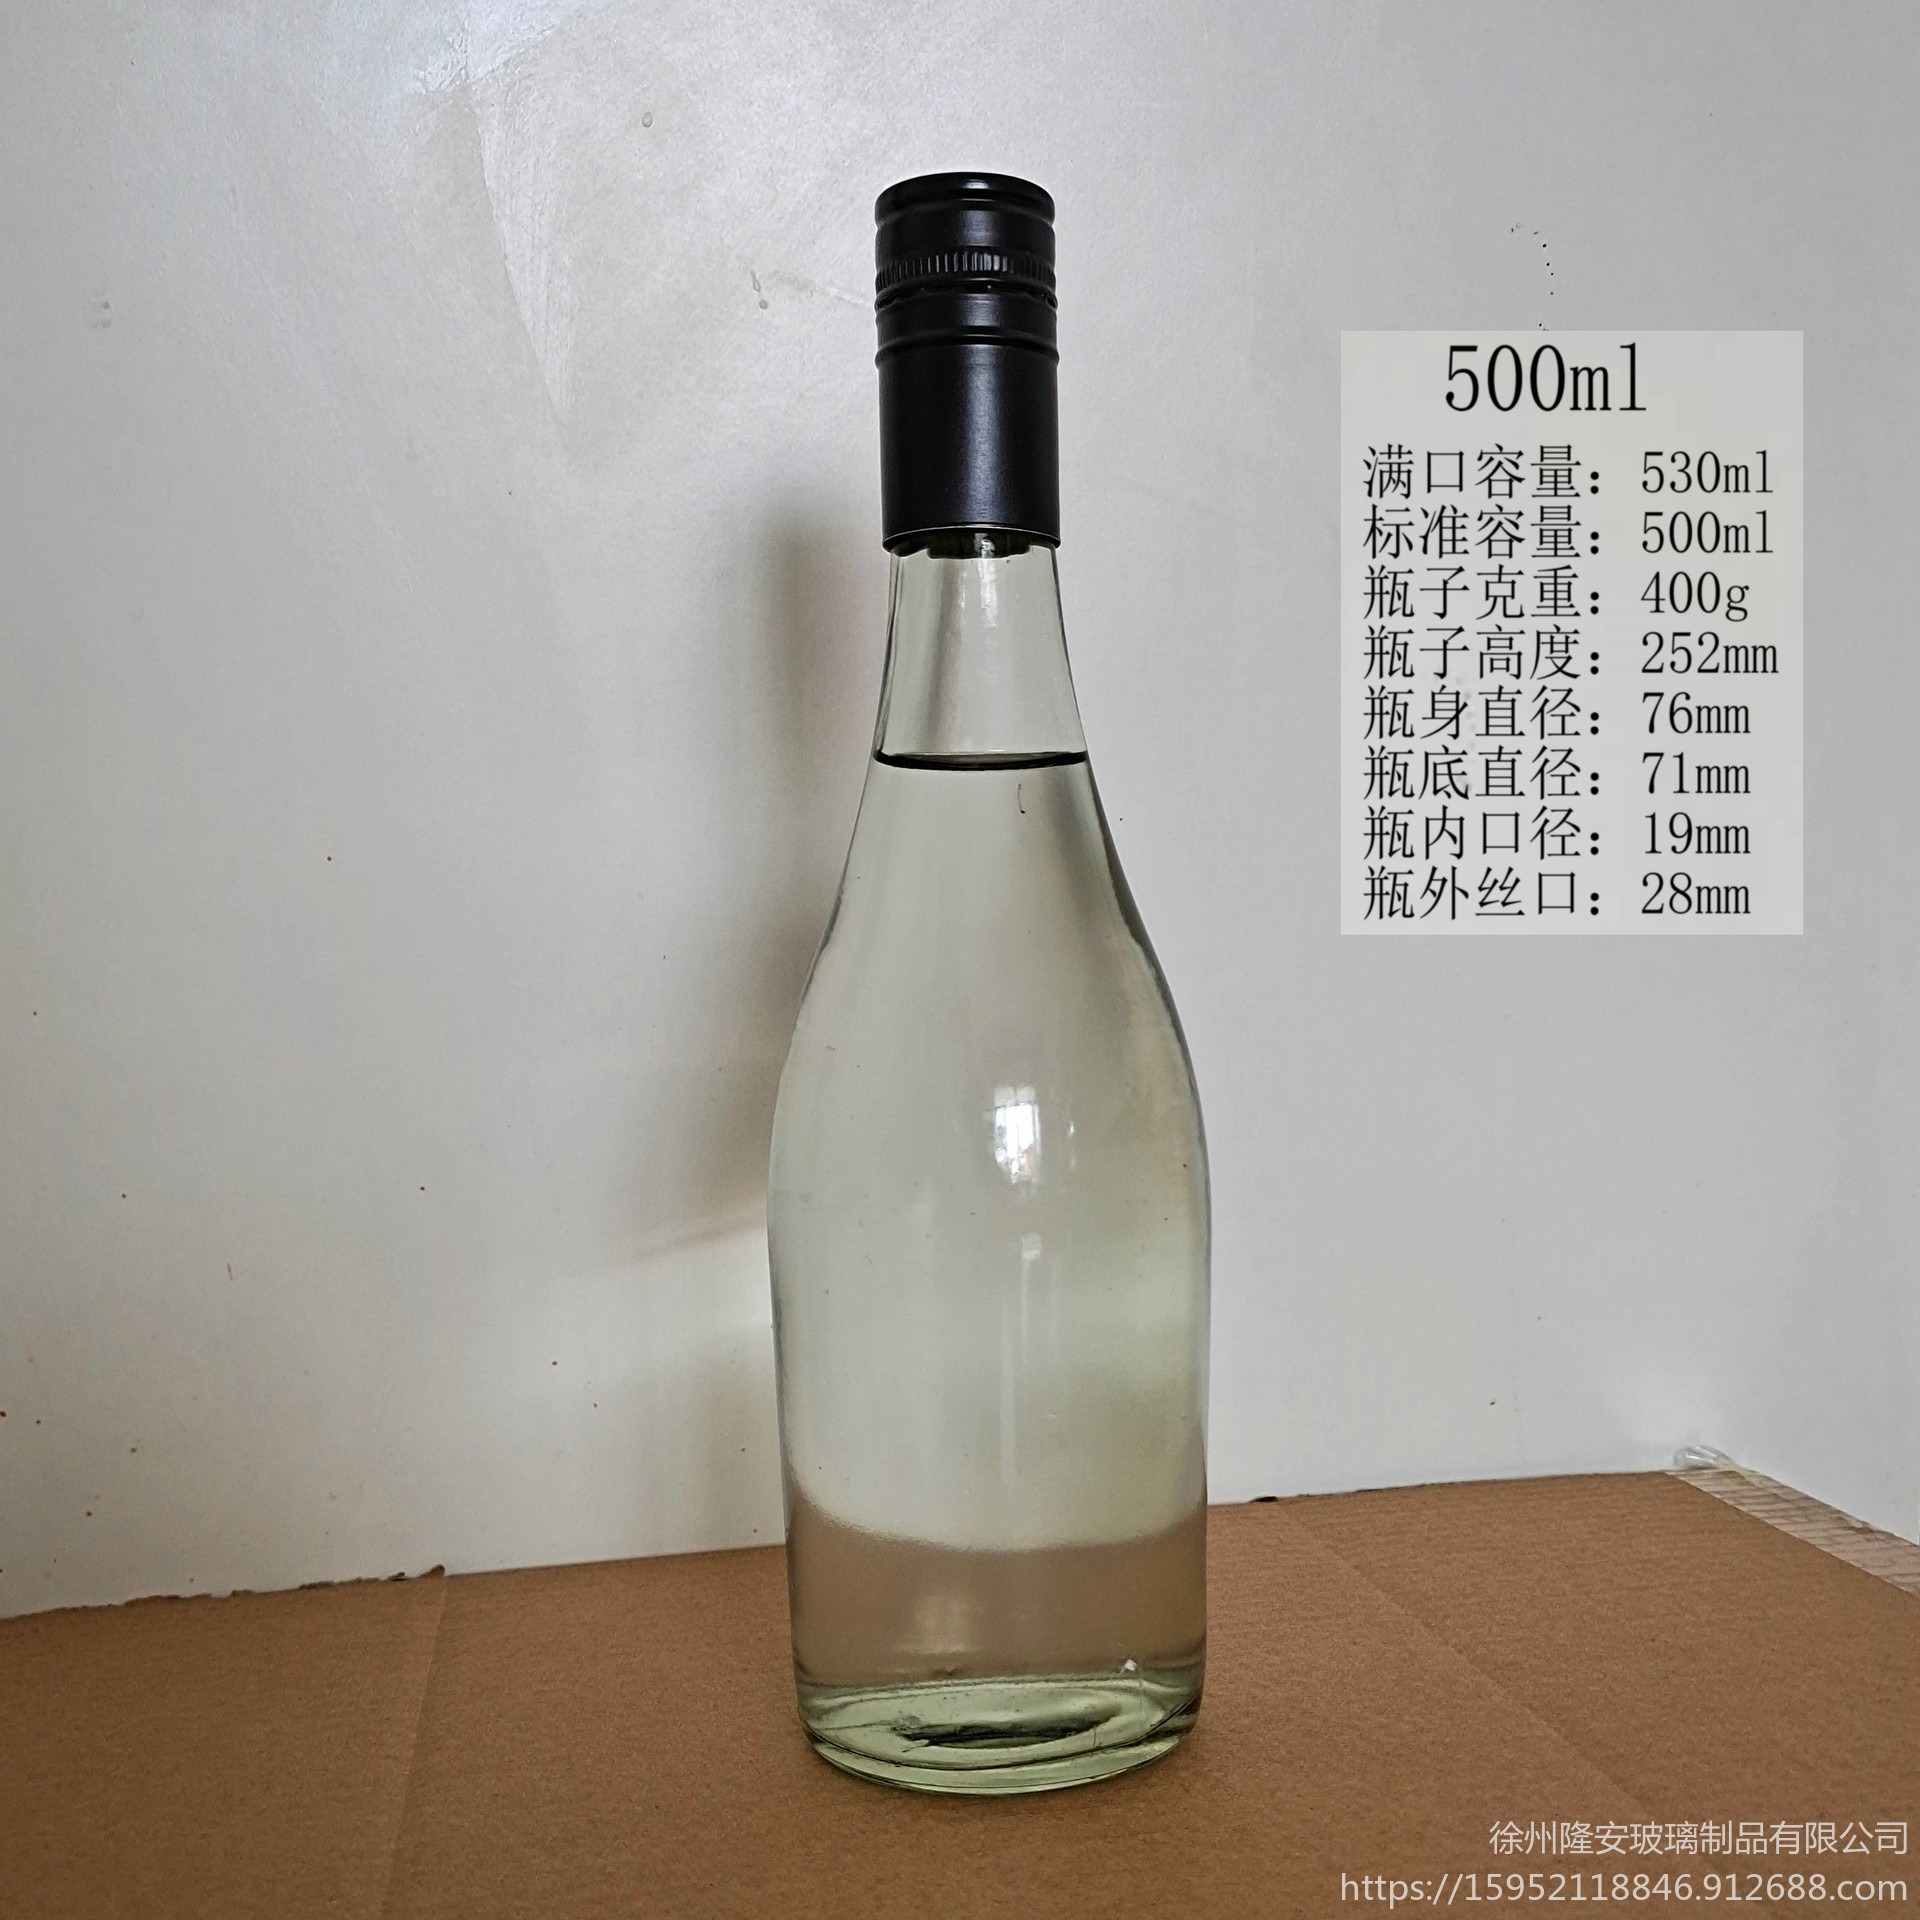 一斤玻璃酒瓶500ml白酒玻璃瓶生产商酒瓶生产厂家批发订购250ml500ml徐州隆安玻璃瓶厂图片